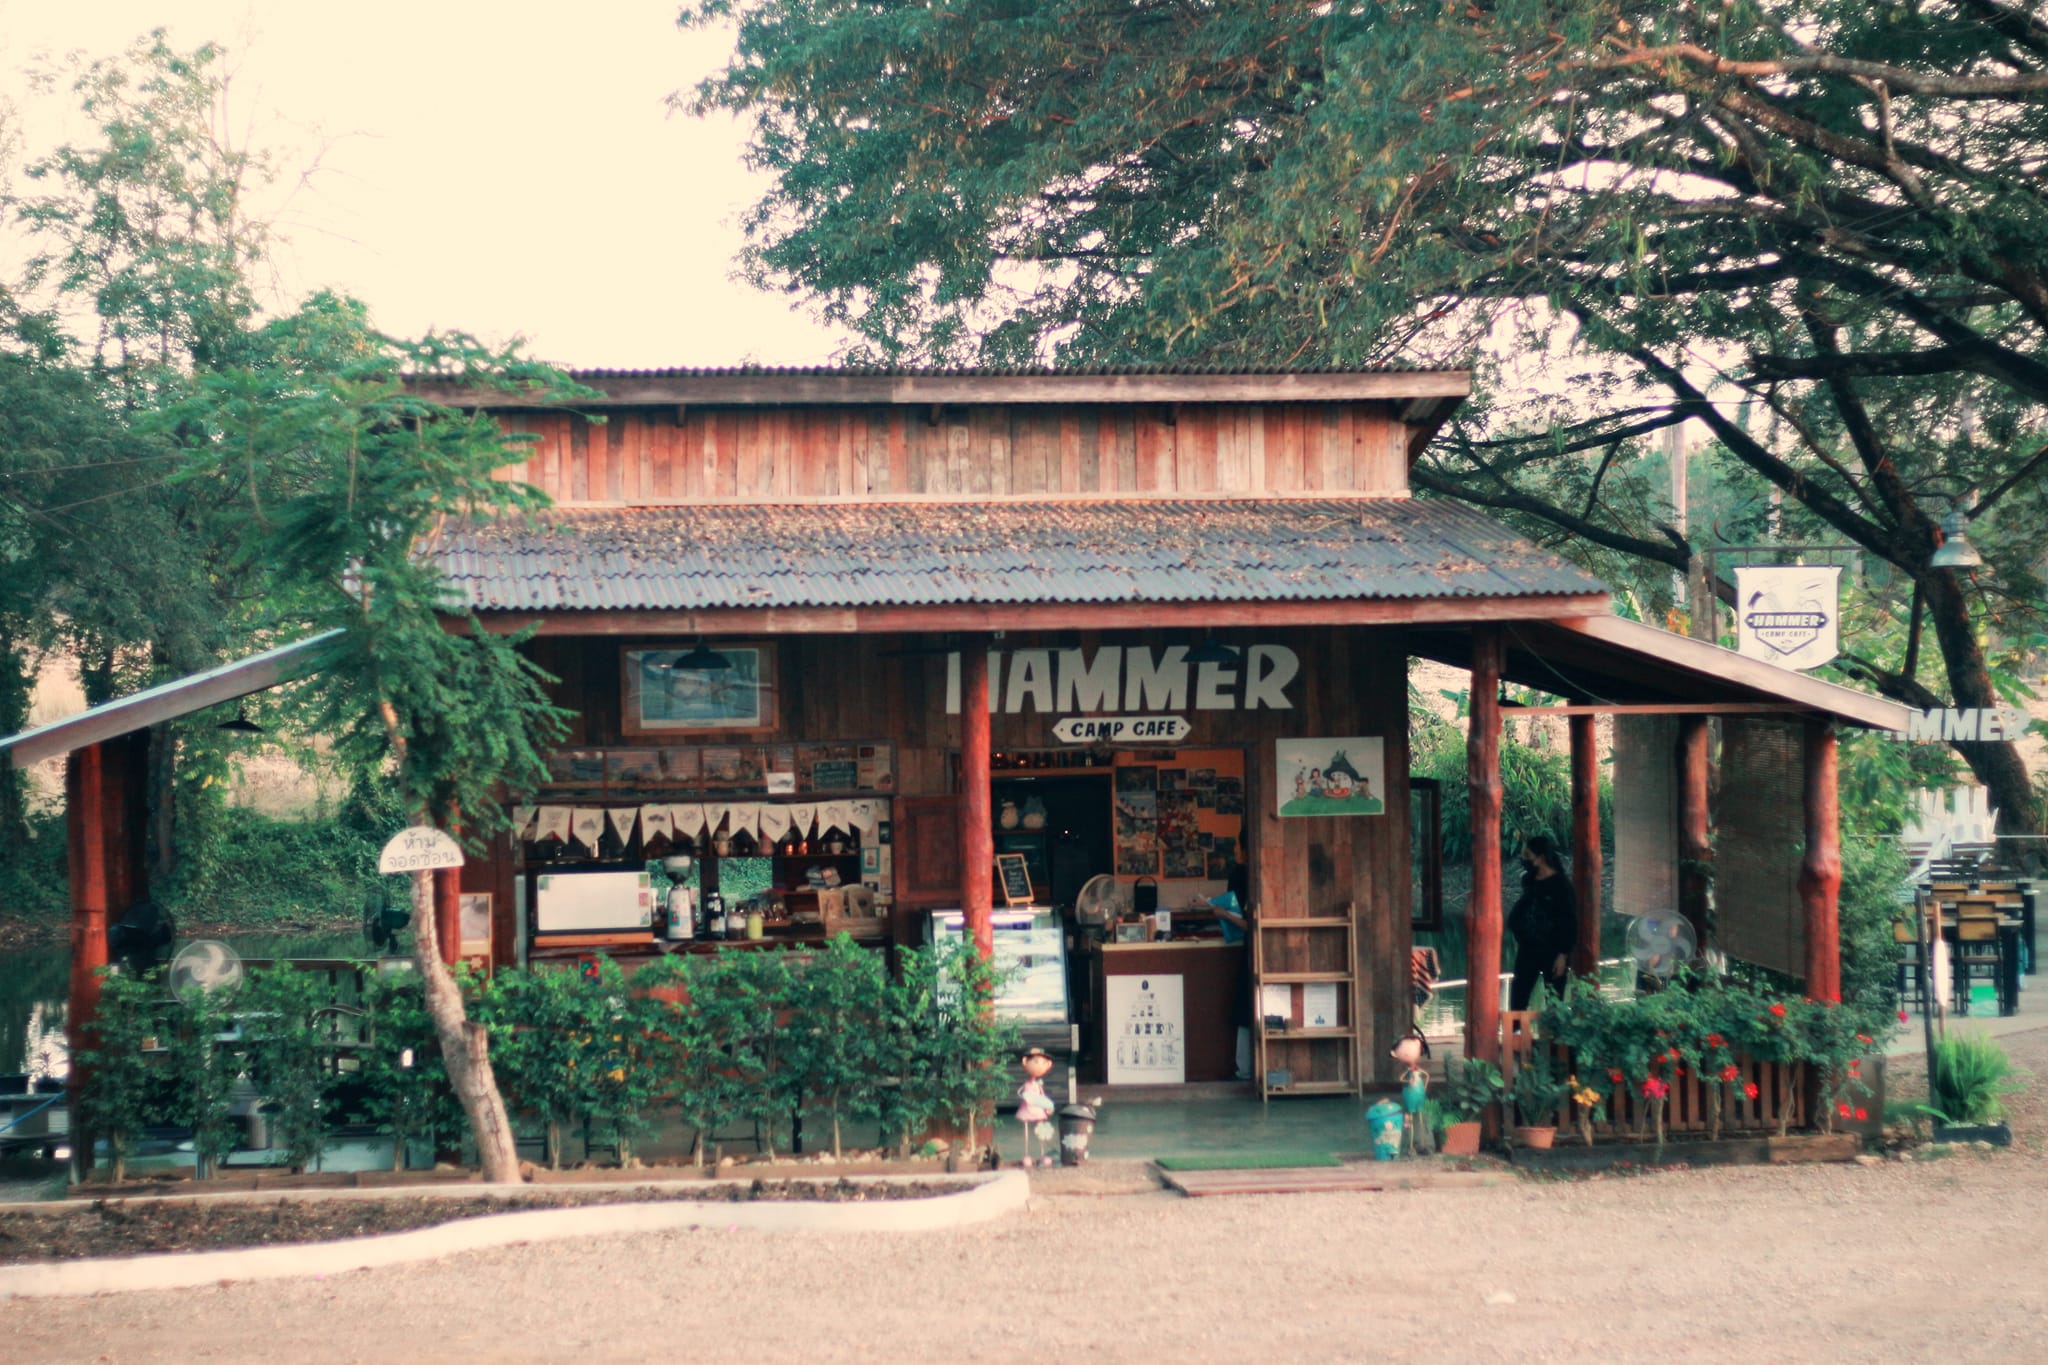 Hammer CAMP Cafe 